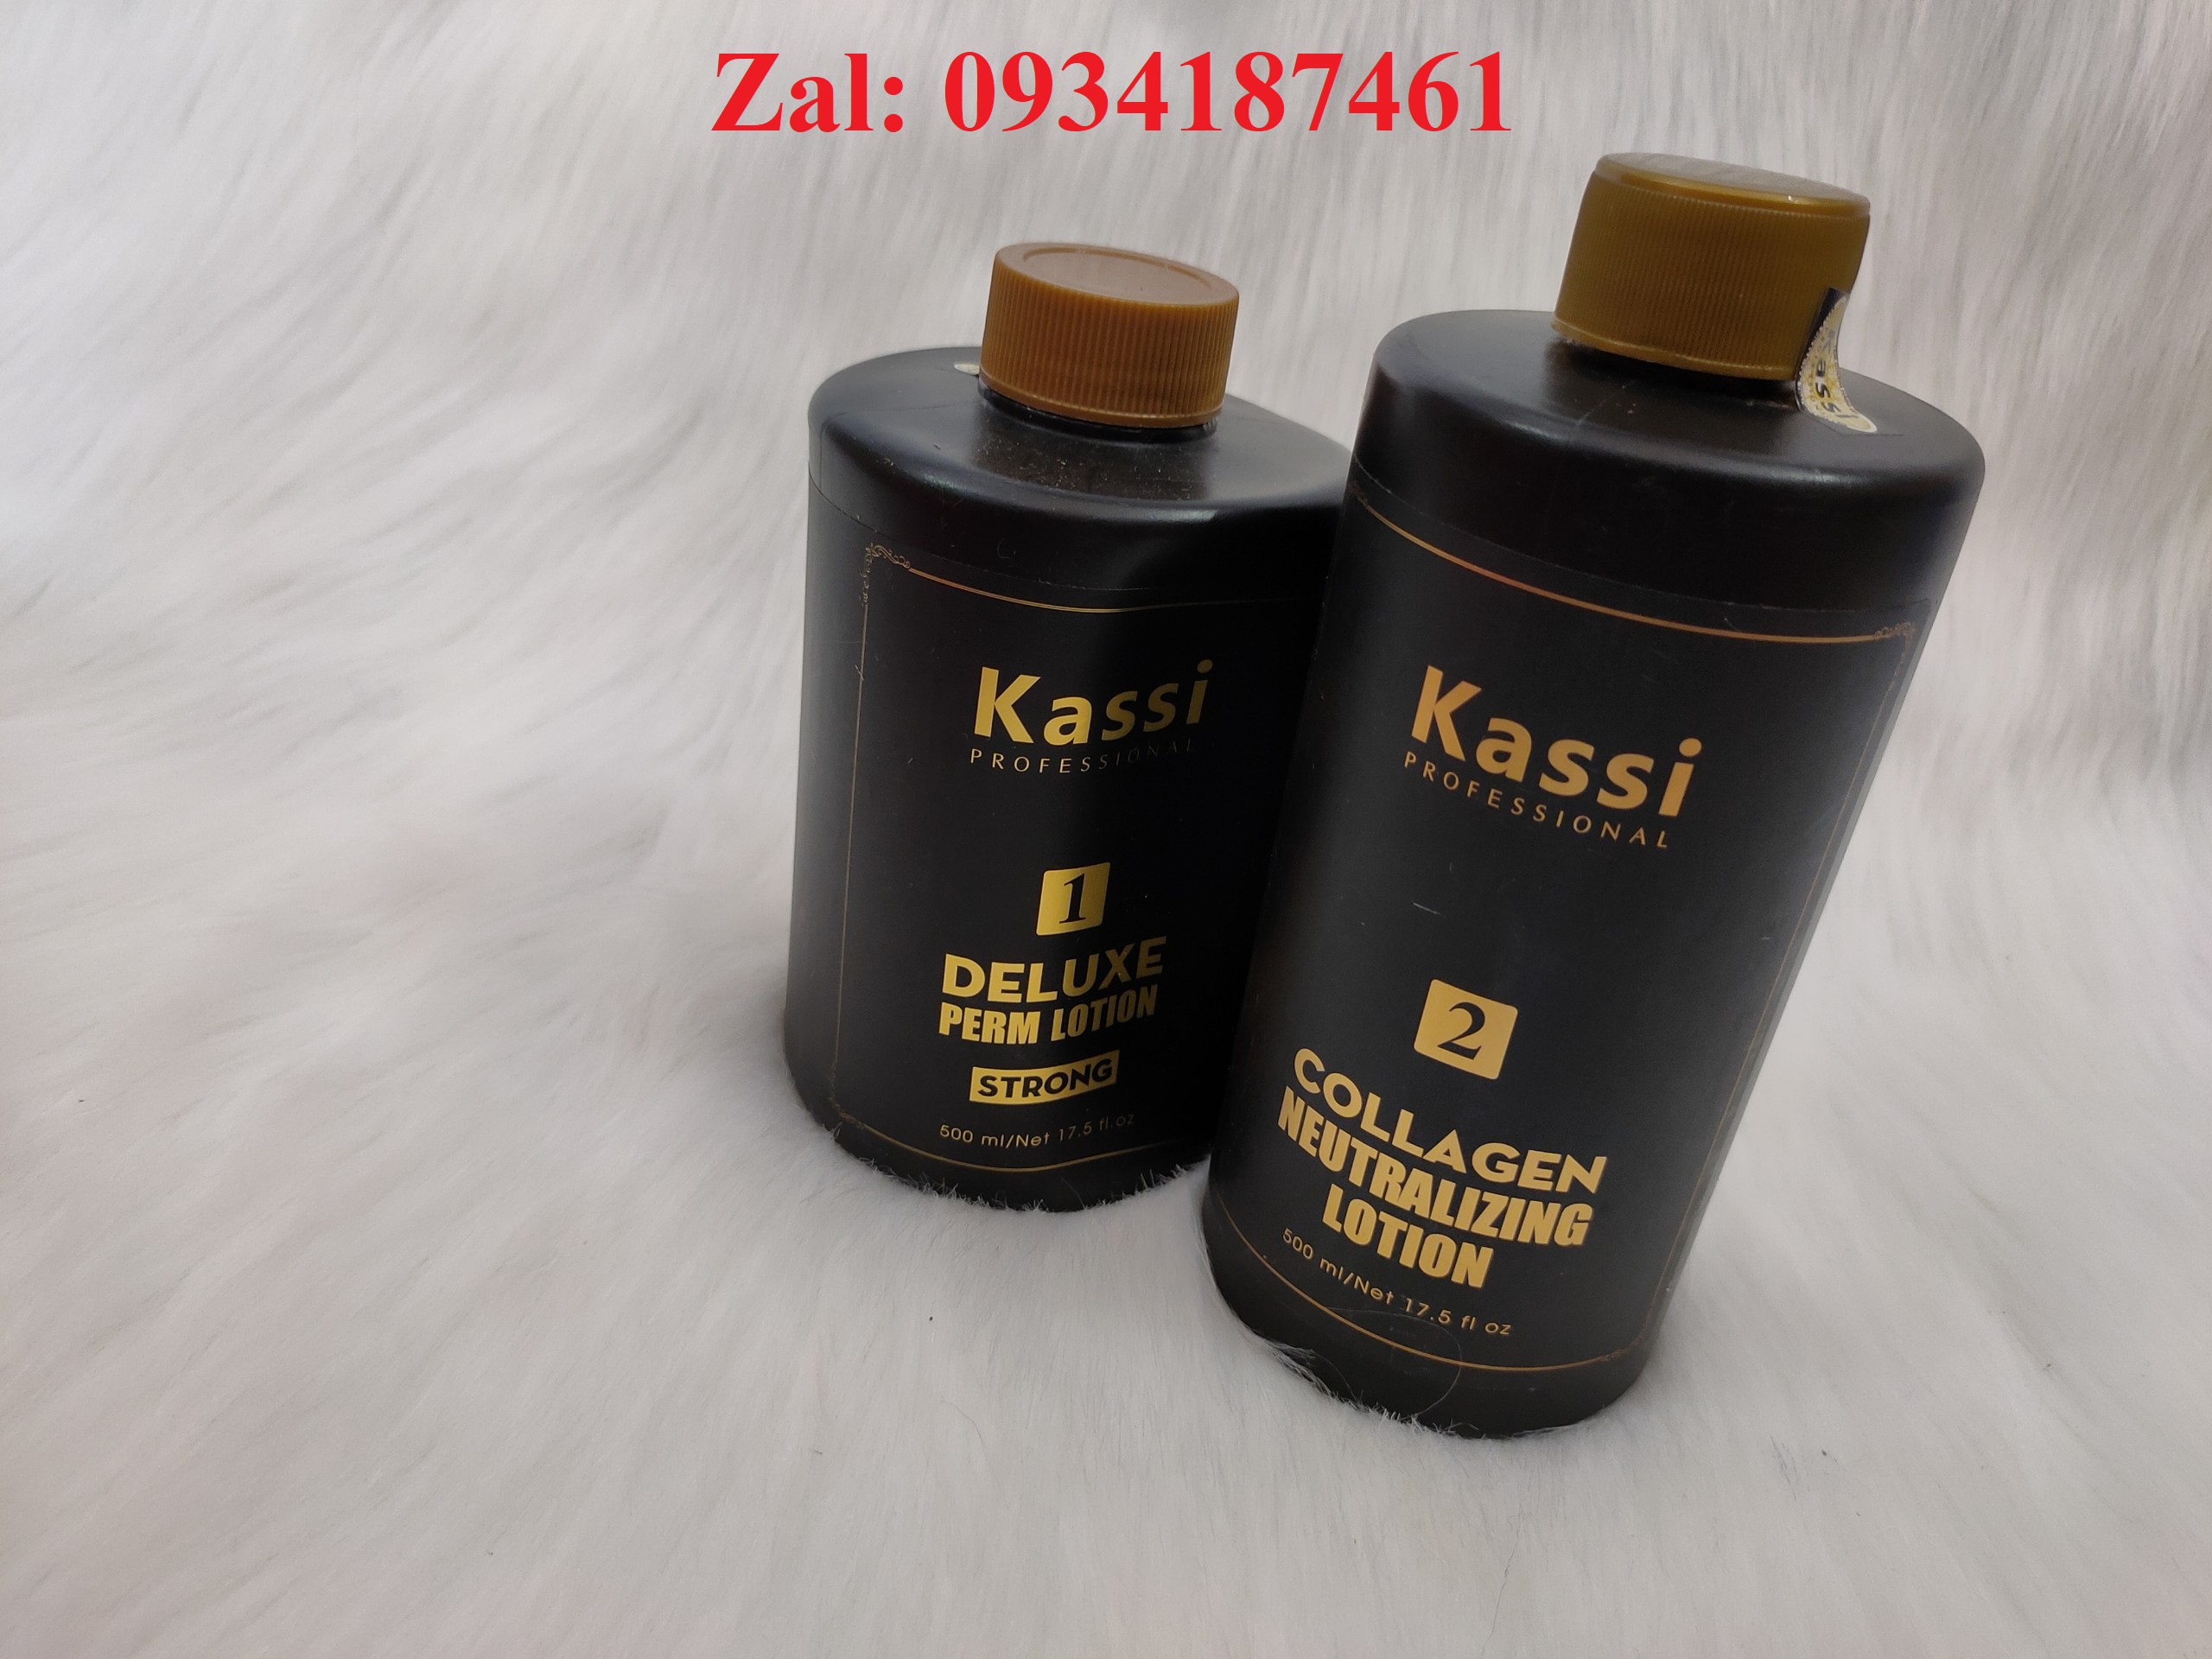 Cách sử dụng thuốc uốn tóc Kassi như thế nào?
